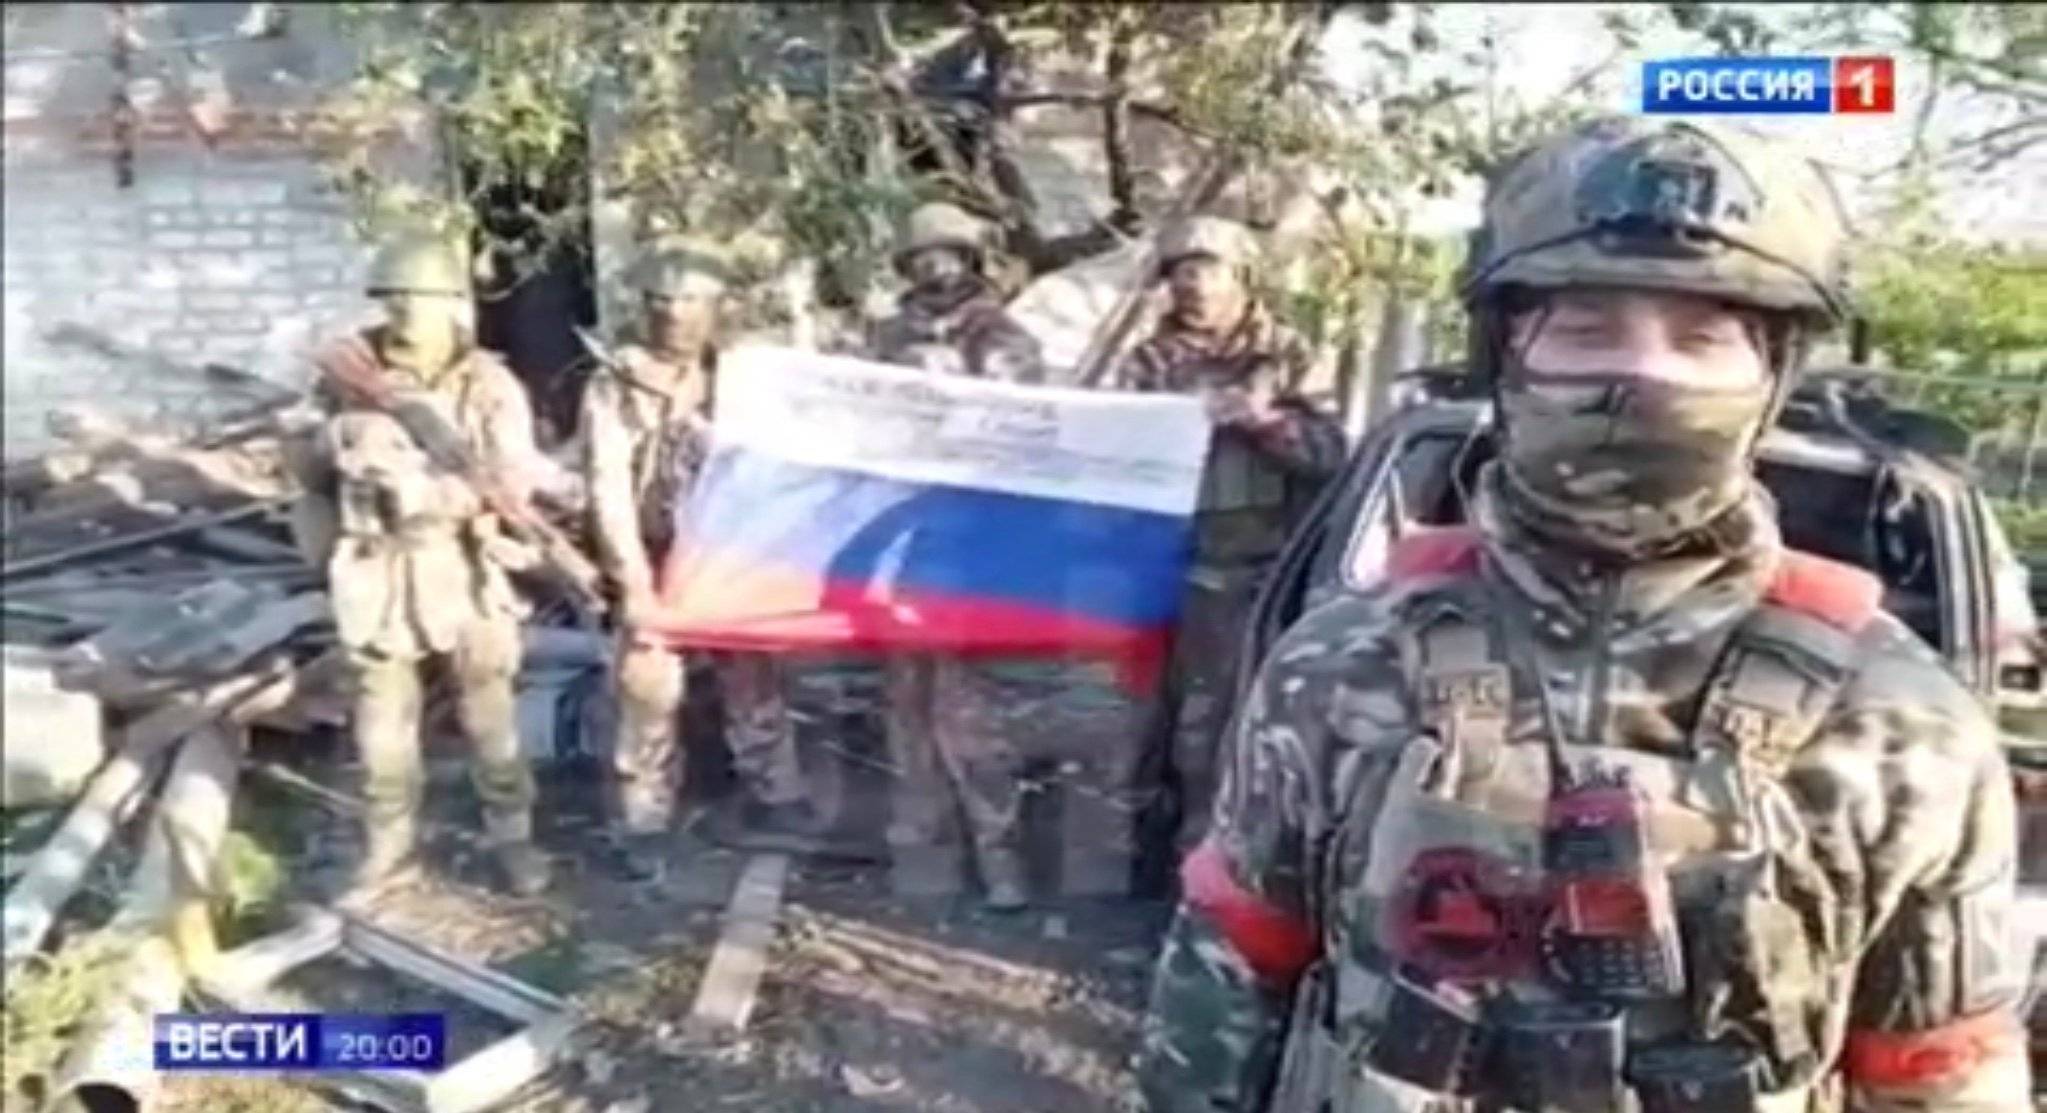 Żołnierze pozują z rosyjską flagą